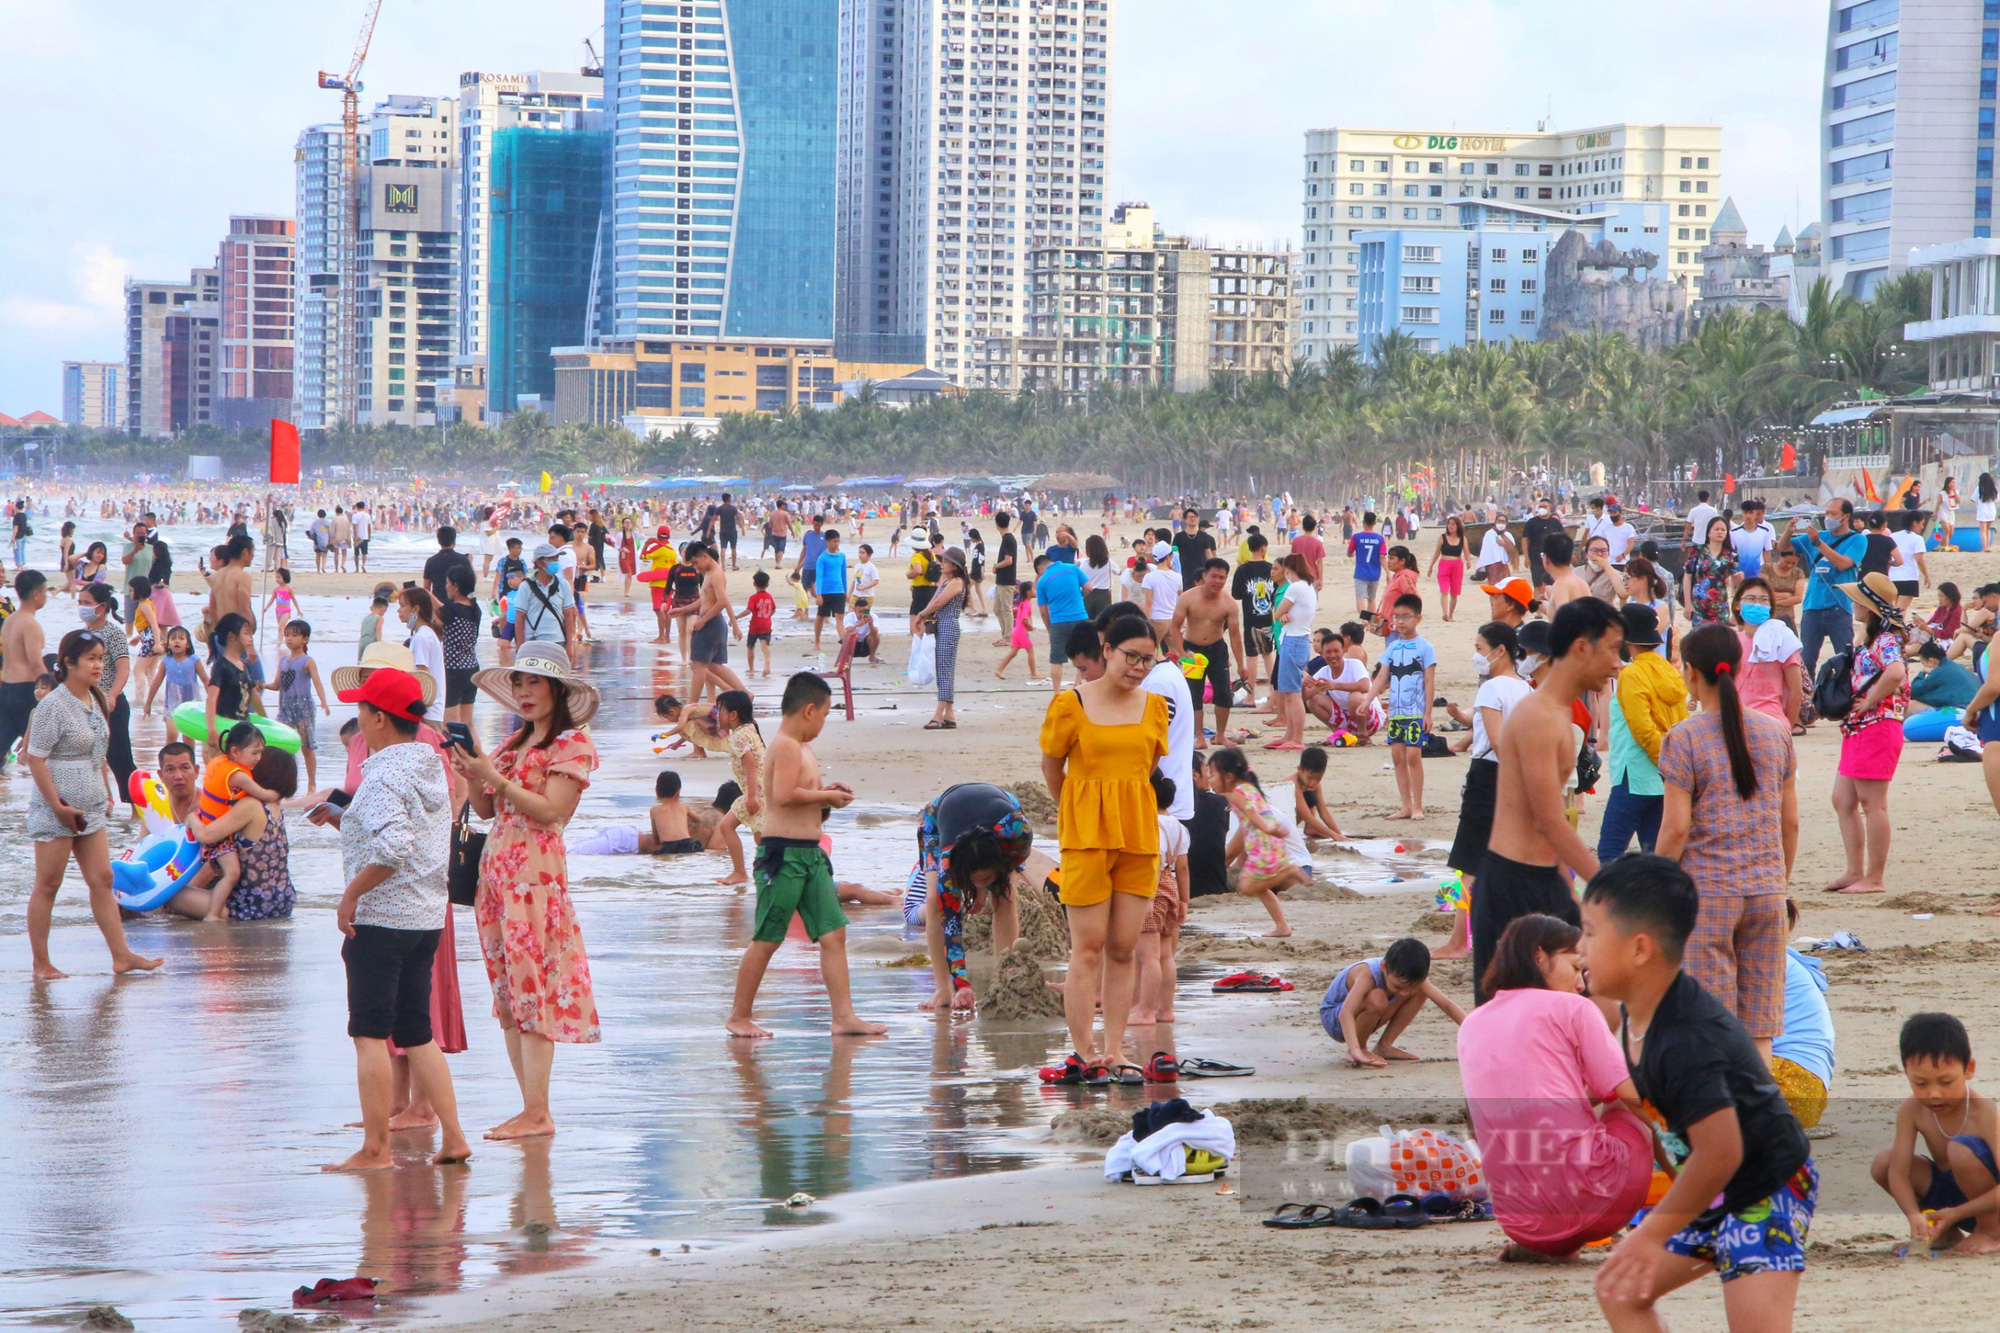 Du khách đổ về các bãi biển Đà Nẵng trong ngày đầu kỳ nghỉ lễ 30/4-1/5 - Ảnh 1.